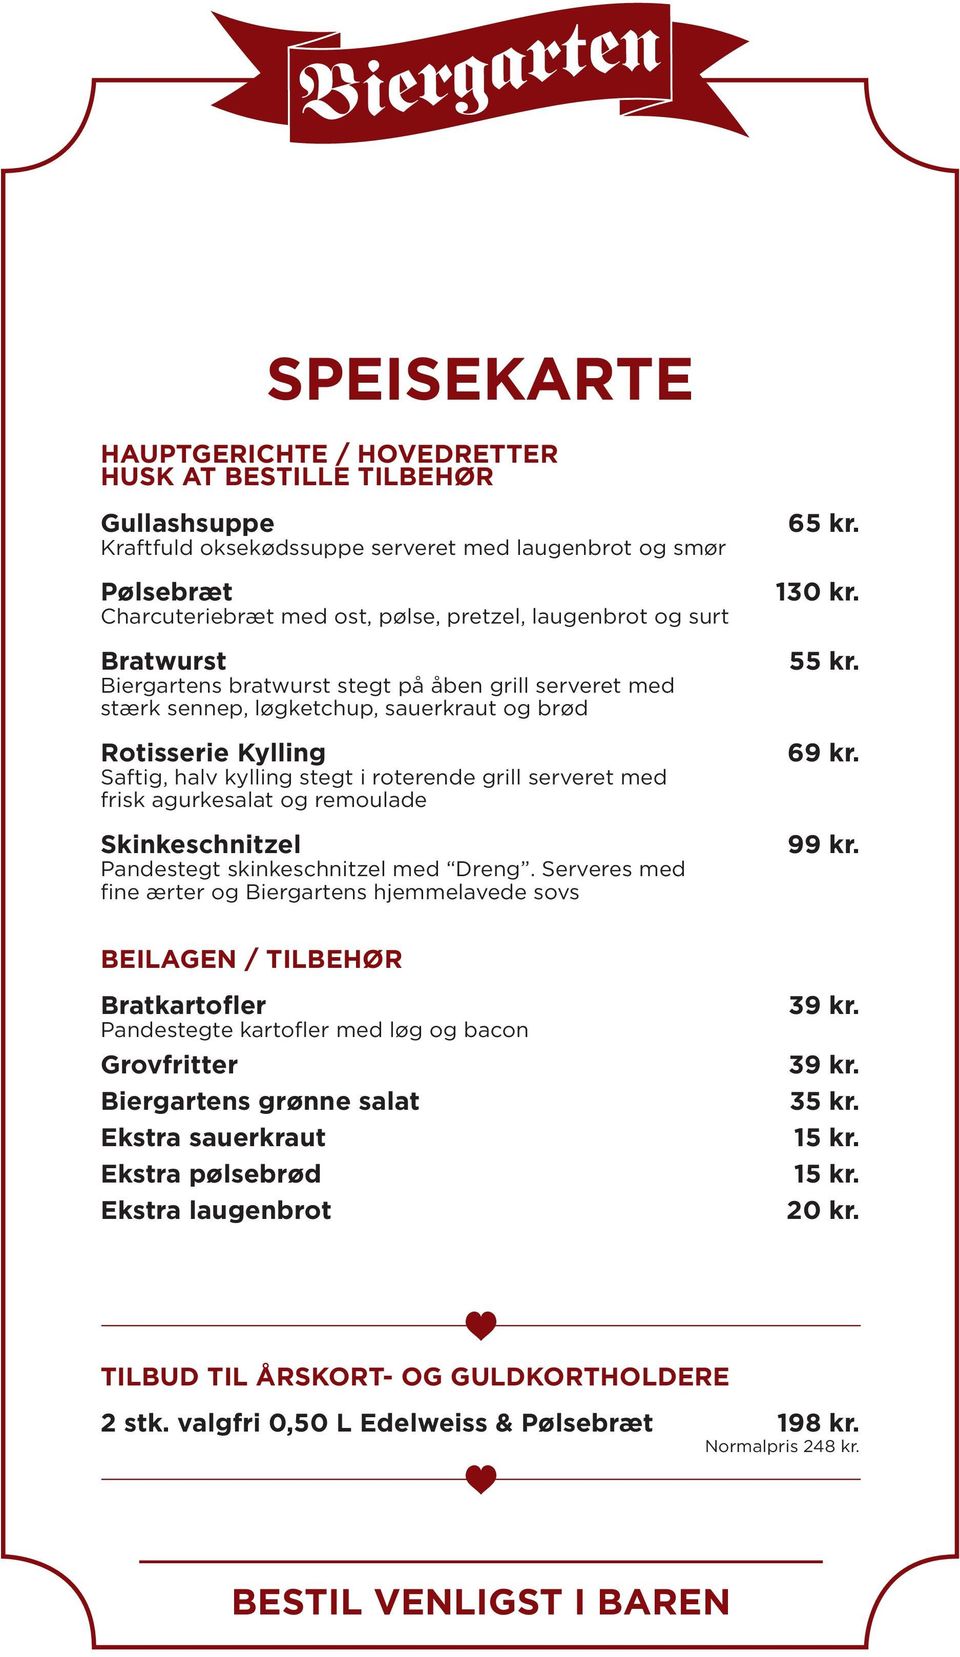 agurkesalat og remoulade Skinkeschnitzel Pandestegt skinkeschnitzel med Dreng.